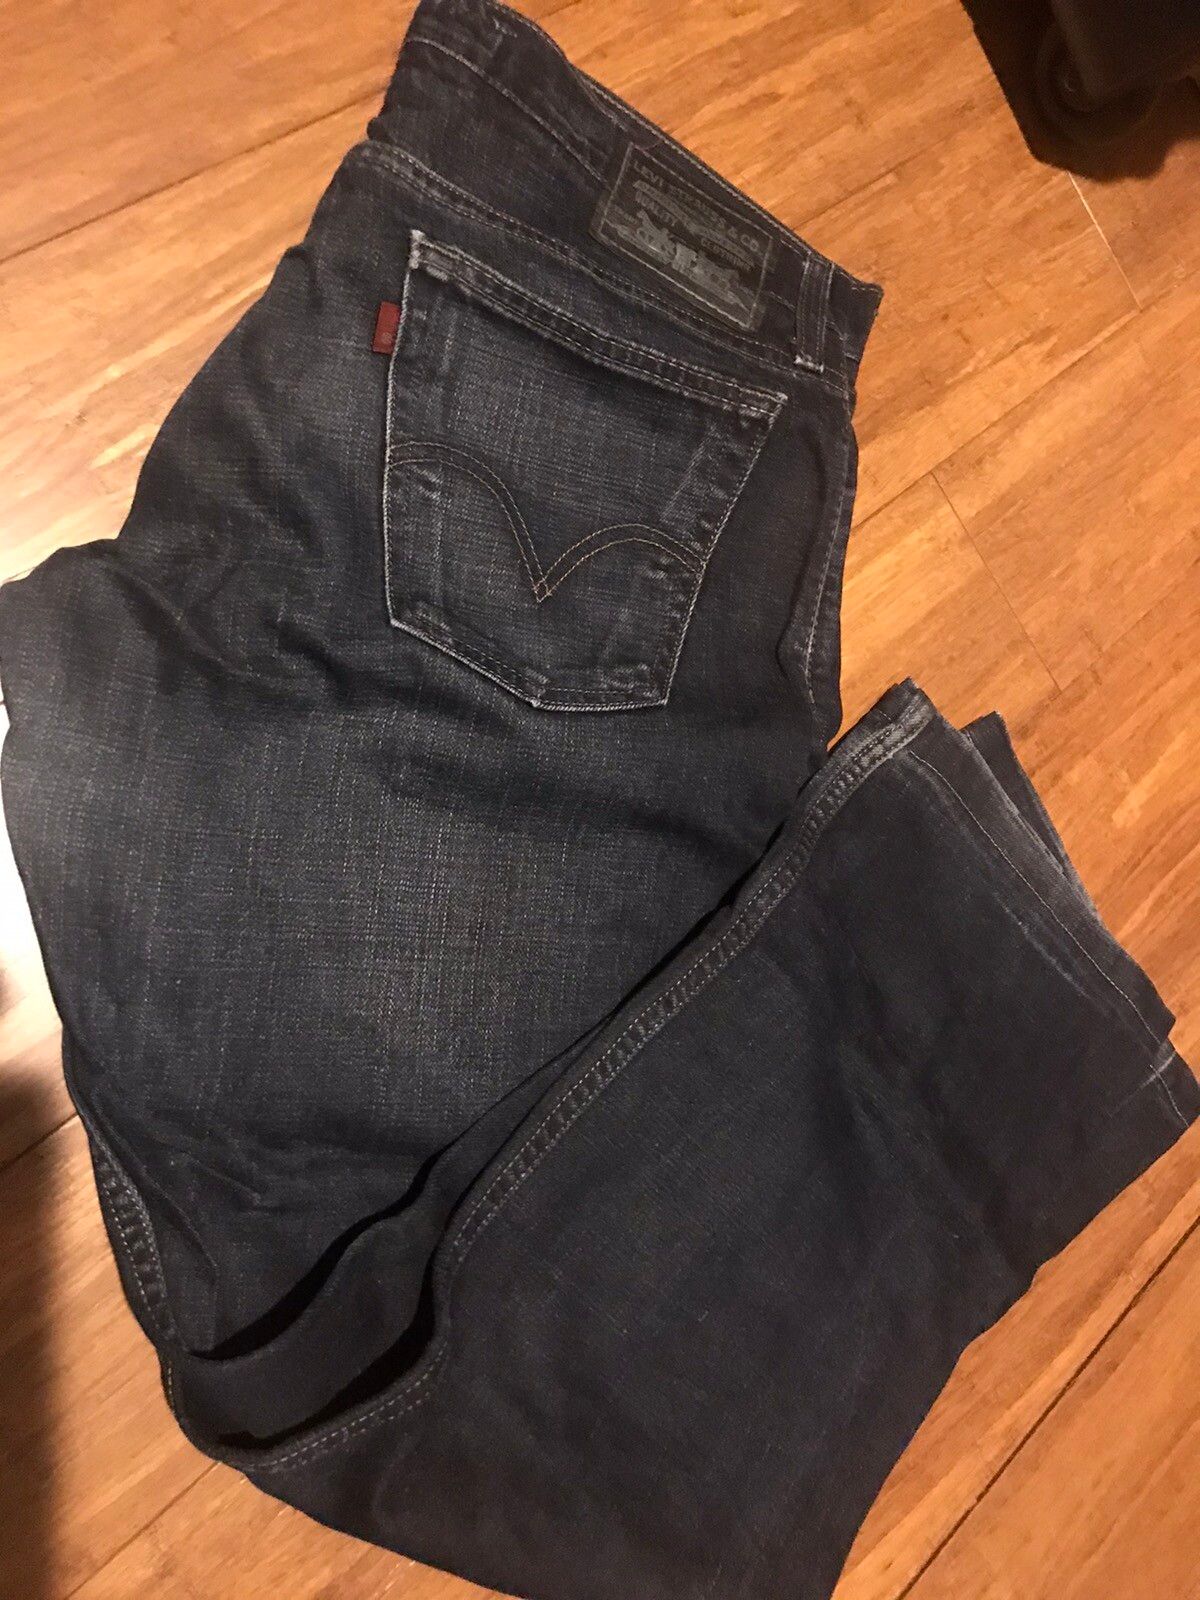 Levi's Vintage Clothing Levi’s Jeans 514 Slim Straight Fit - Size 32 Size US 32 / EU 48 - 1 Preview